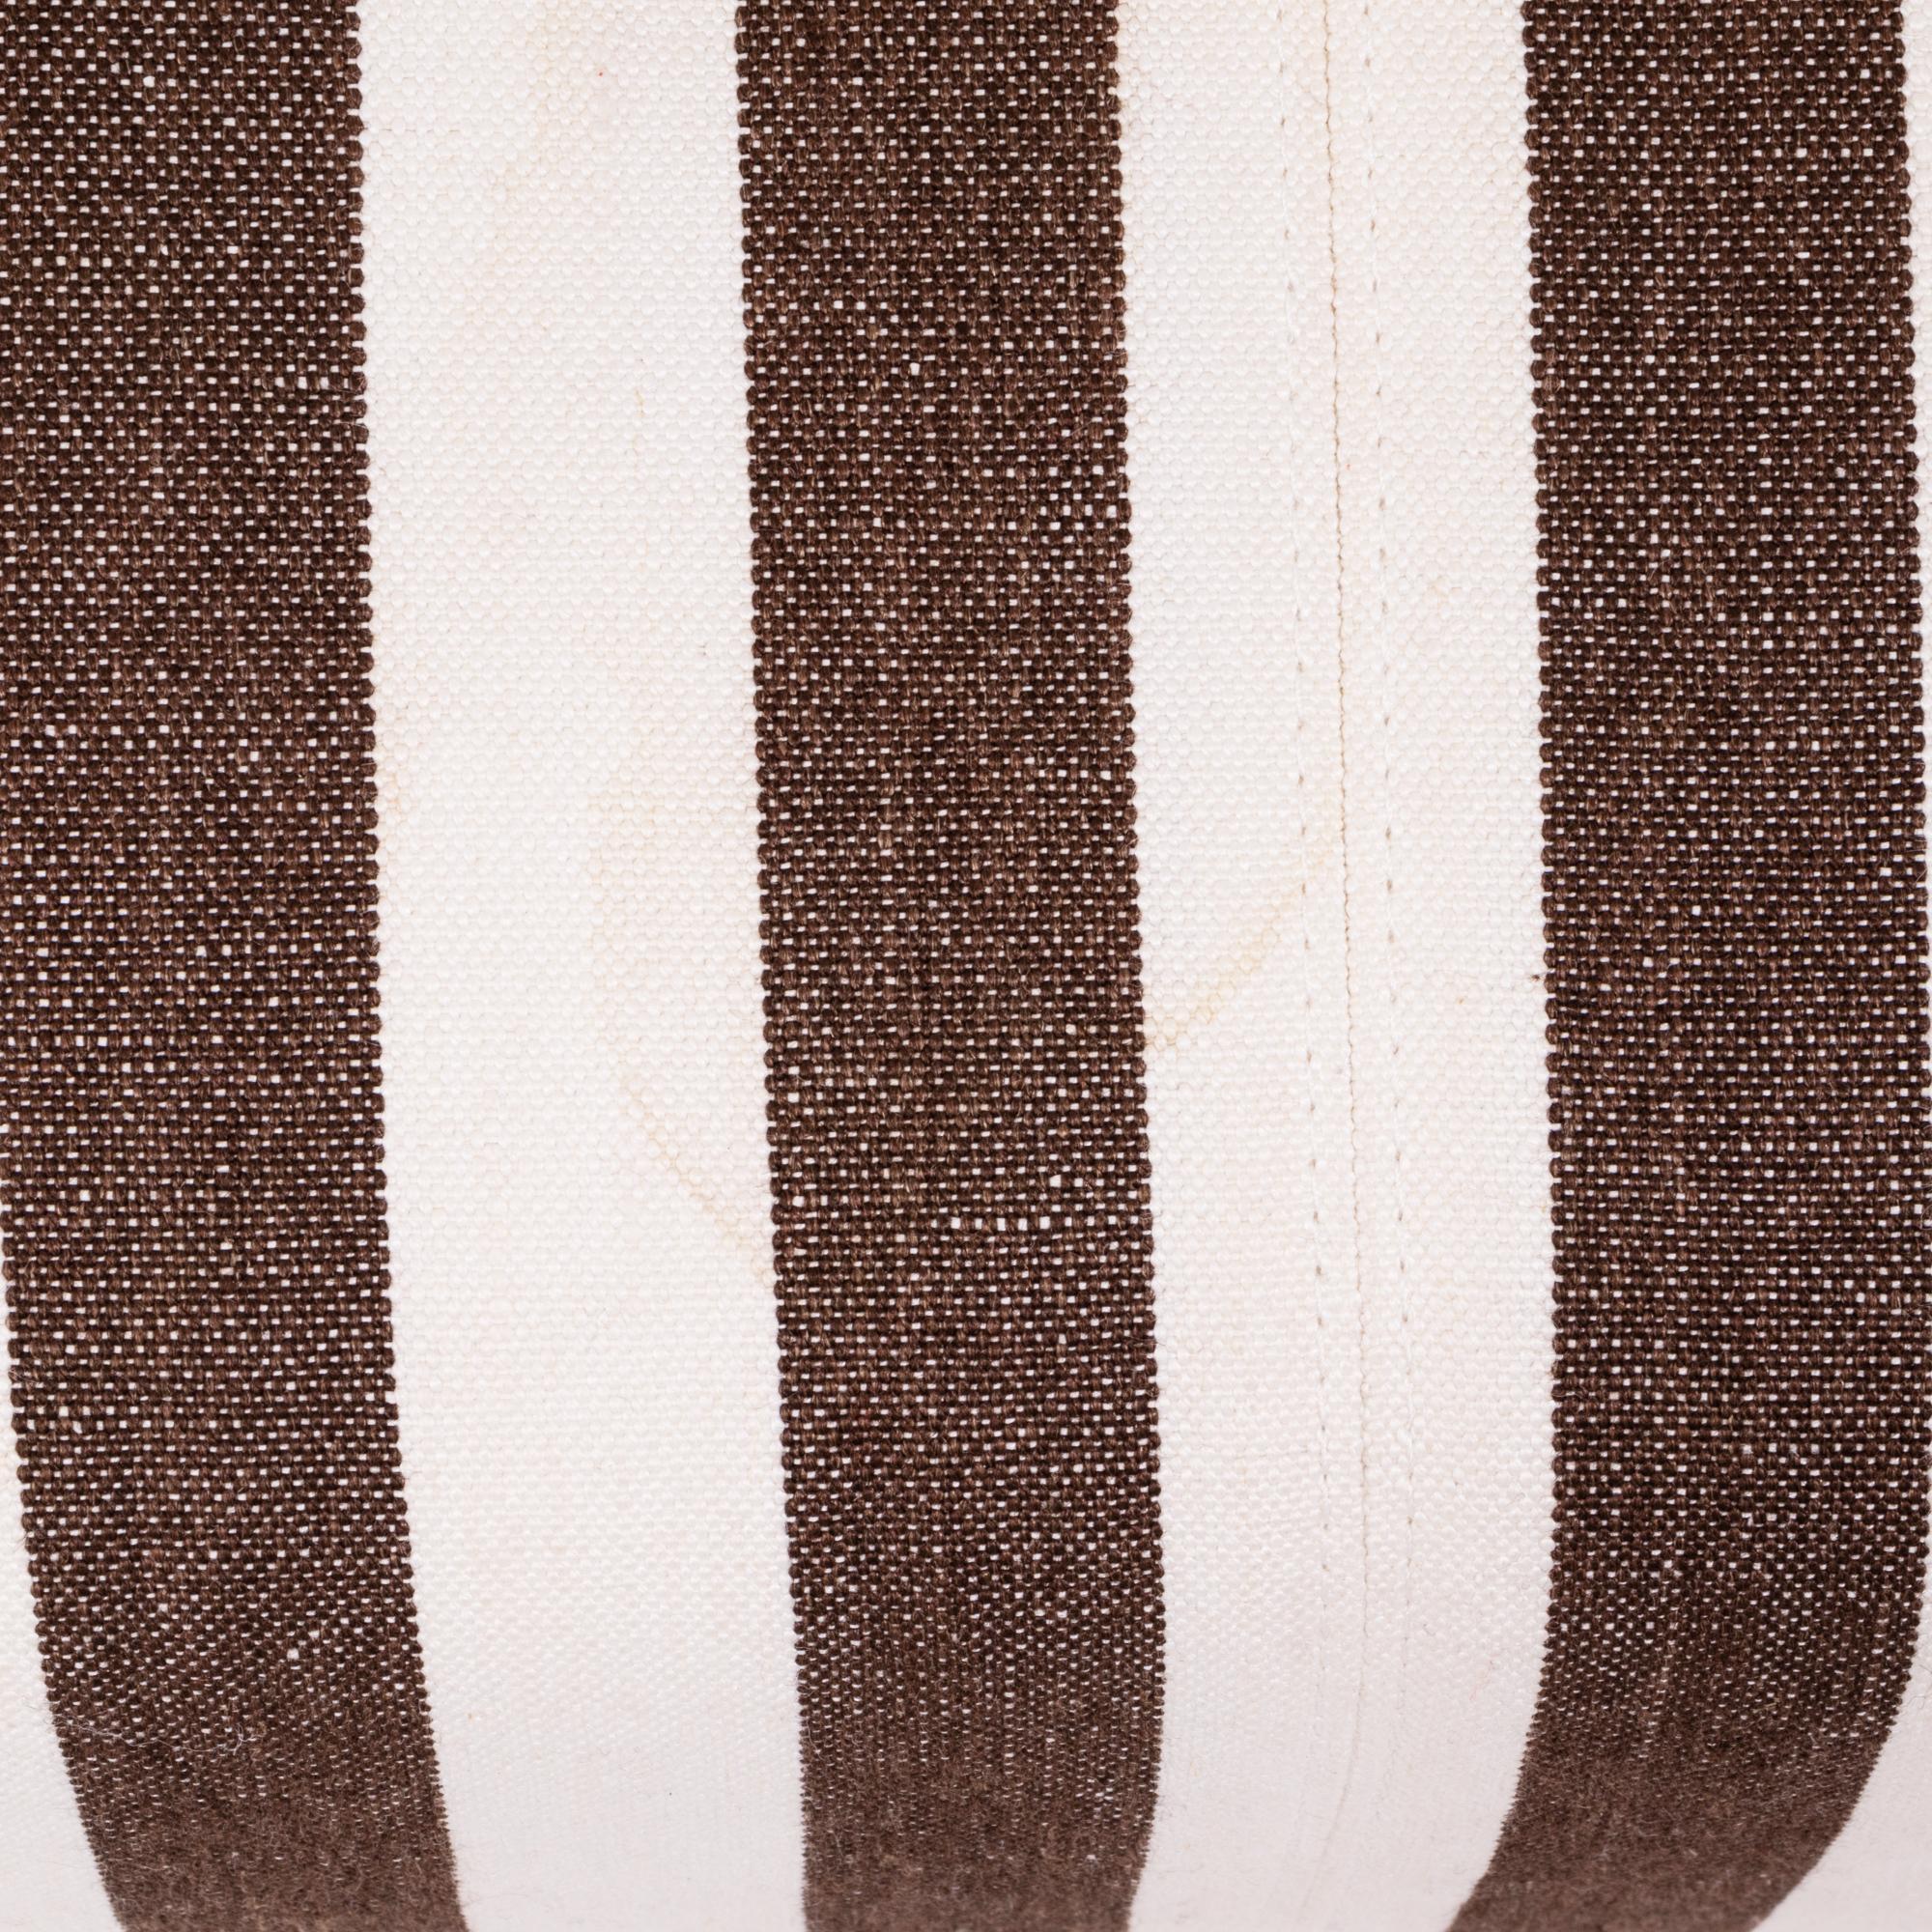 B&B Italia P60 Brown Striped Fabric Ottoman by Antonio Citterio In Good Condition In London, GB